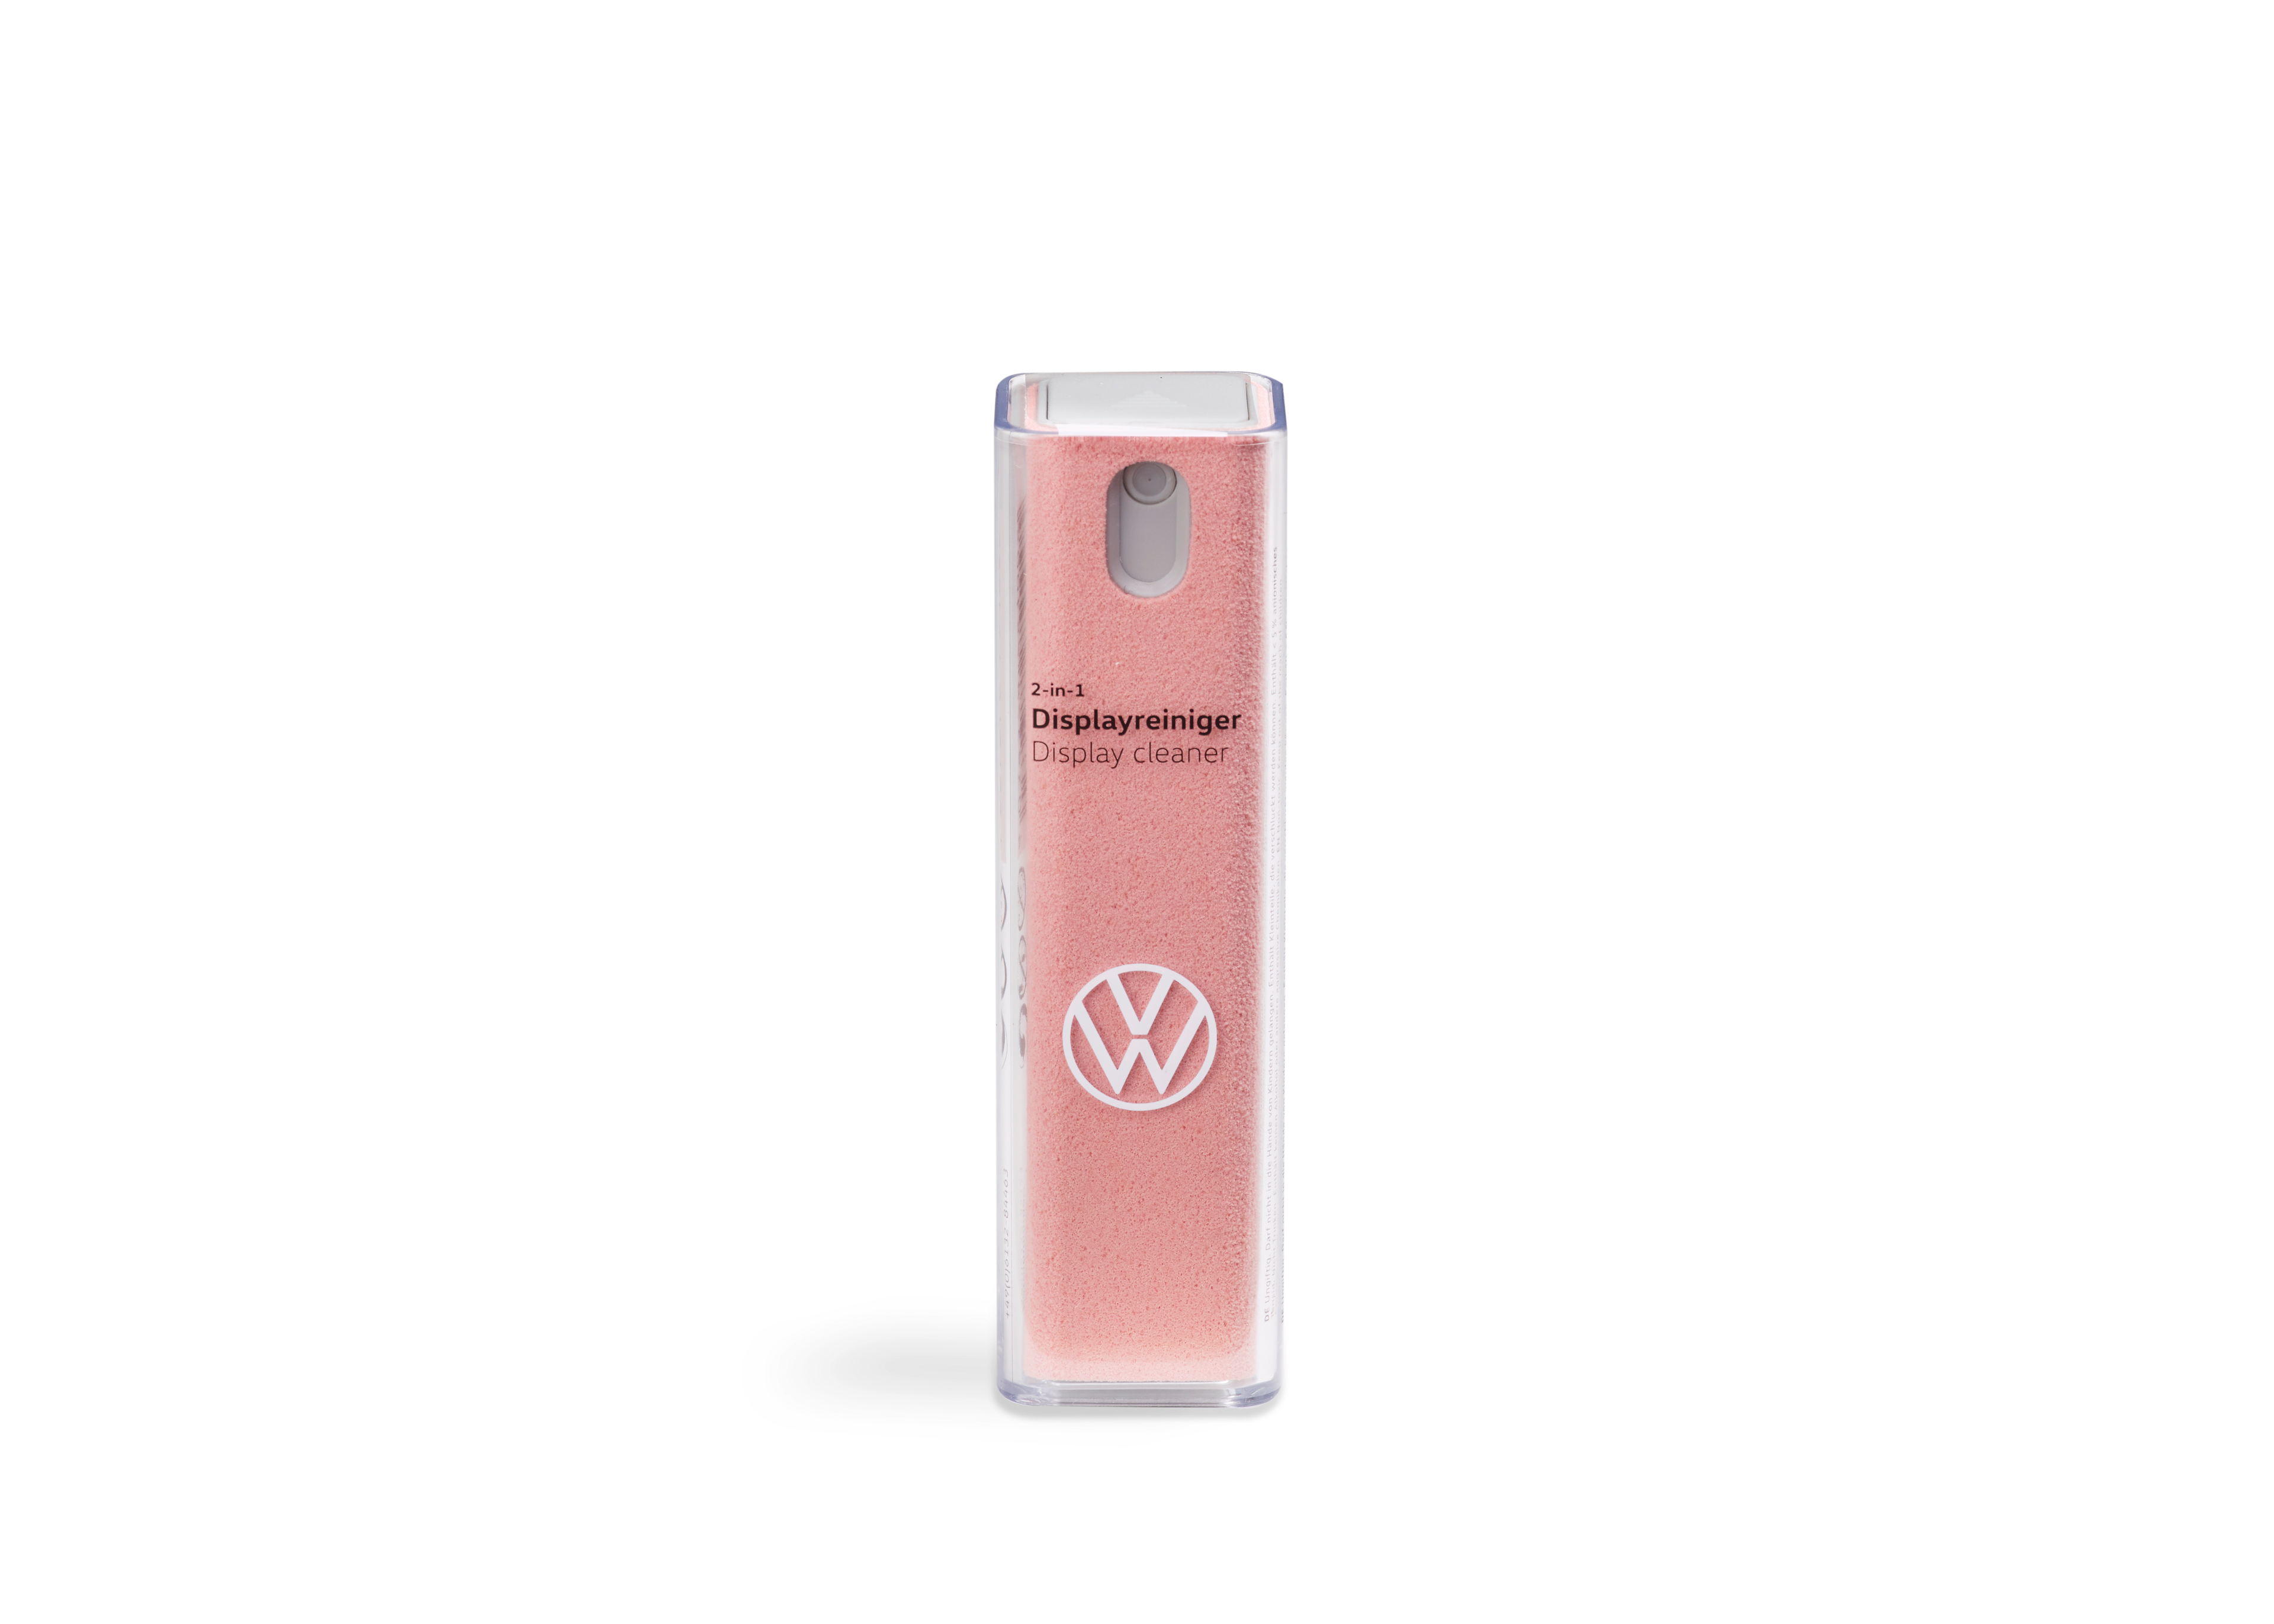 Volkswagen Displayreiniger-Spray 2 in 1